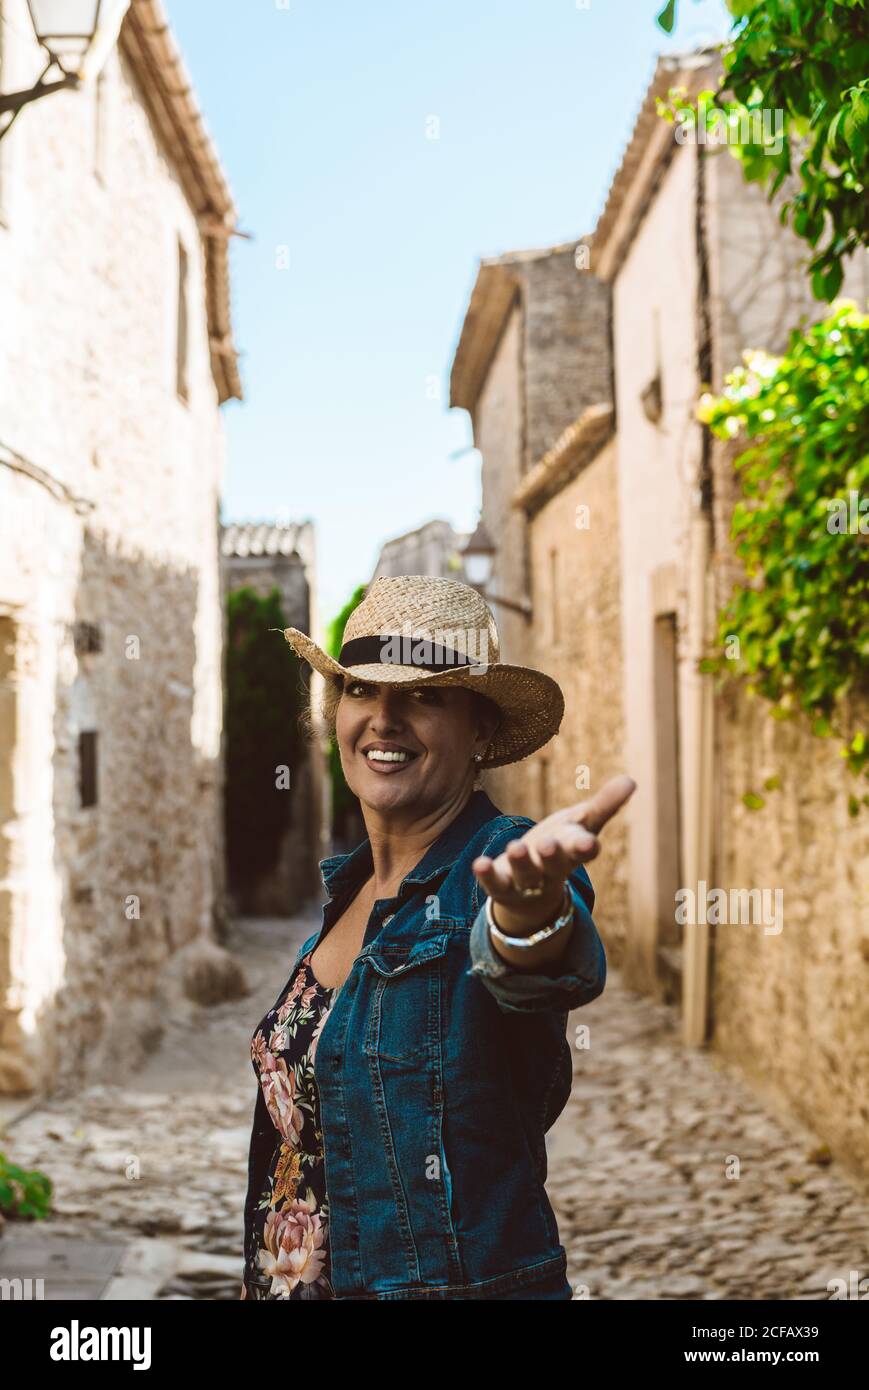 Frau trägt einen Hut und schaut auf die Kamera und reicht die Hand Zur Kamera, während in den Straßen eines mittelalterlichen Dorfes Mit Wandkletterer Werk in Europa Stockfoto